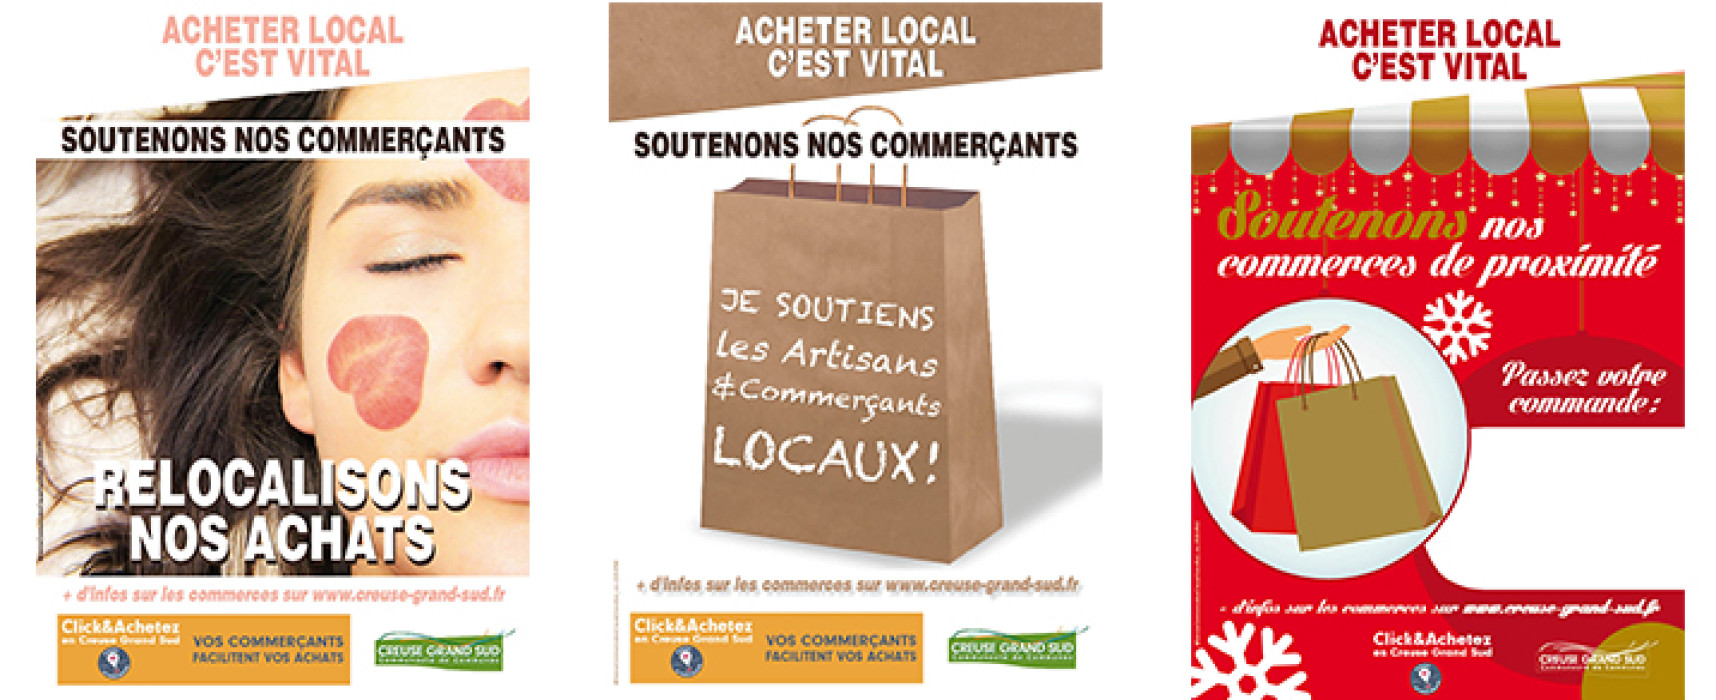 [Covid19] Creuse Grand Sud : une campagne d’affichage en soutien au commerce local – Décembre 2020